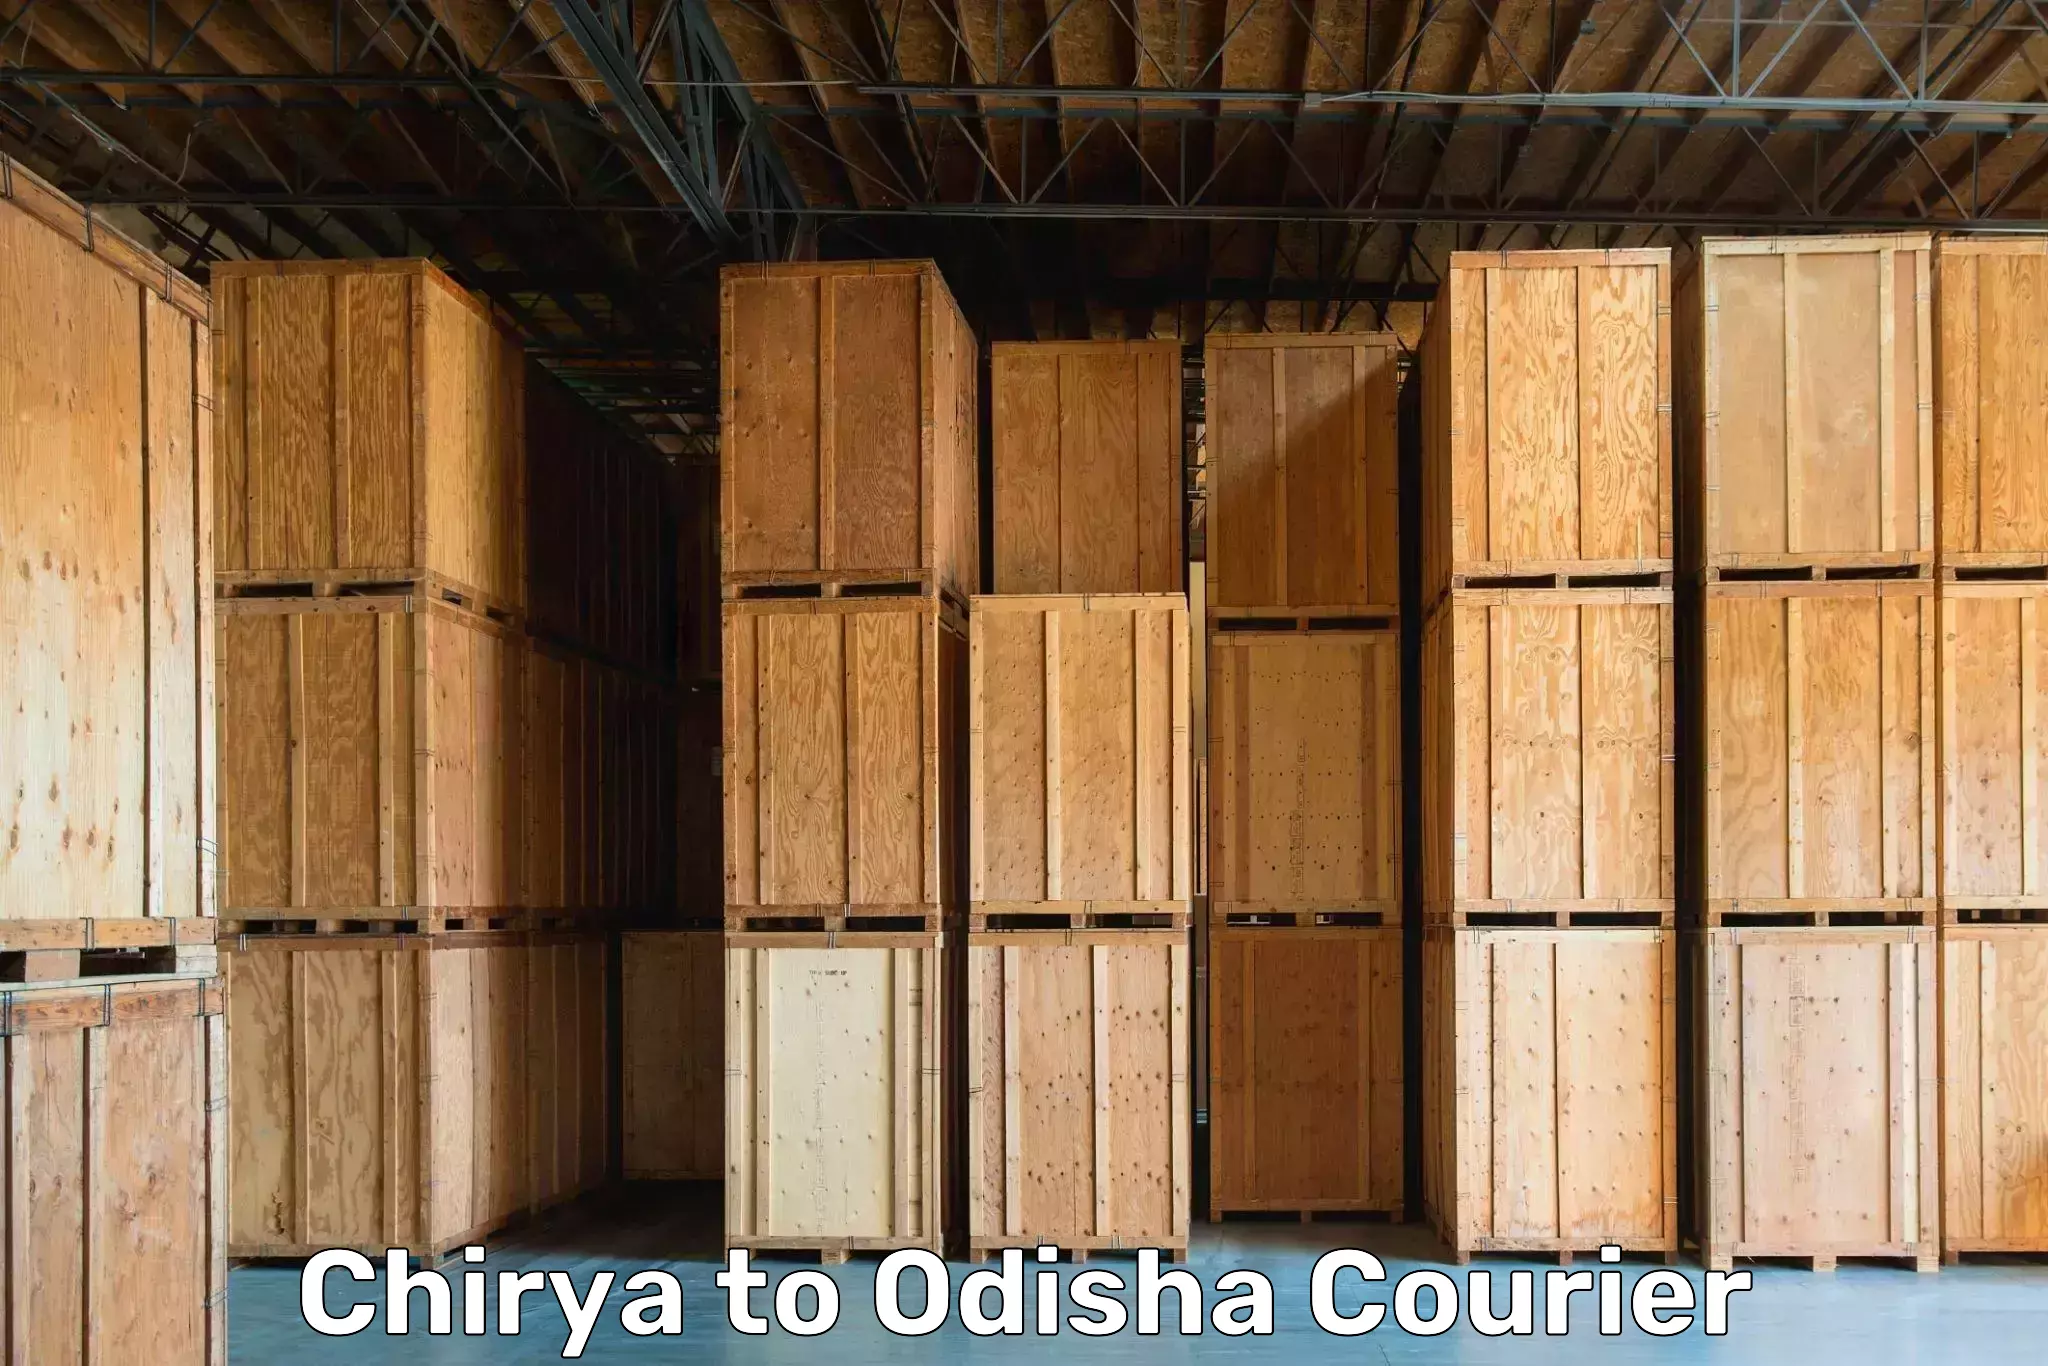 Furniture moving experts Chirya to Kesinga